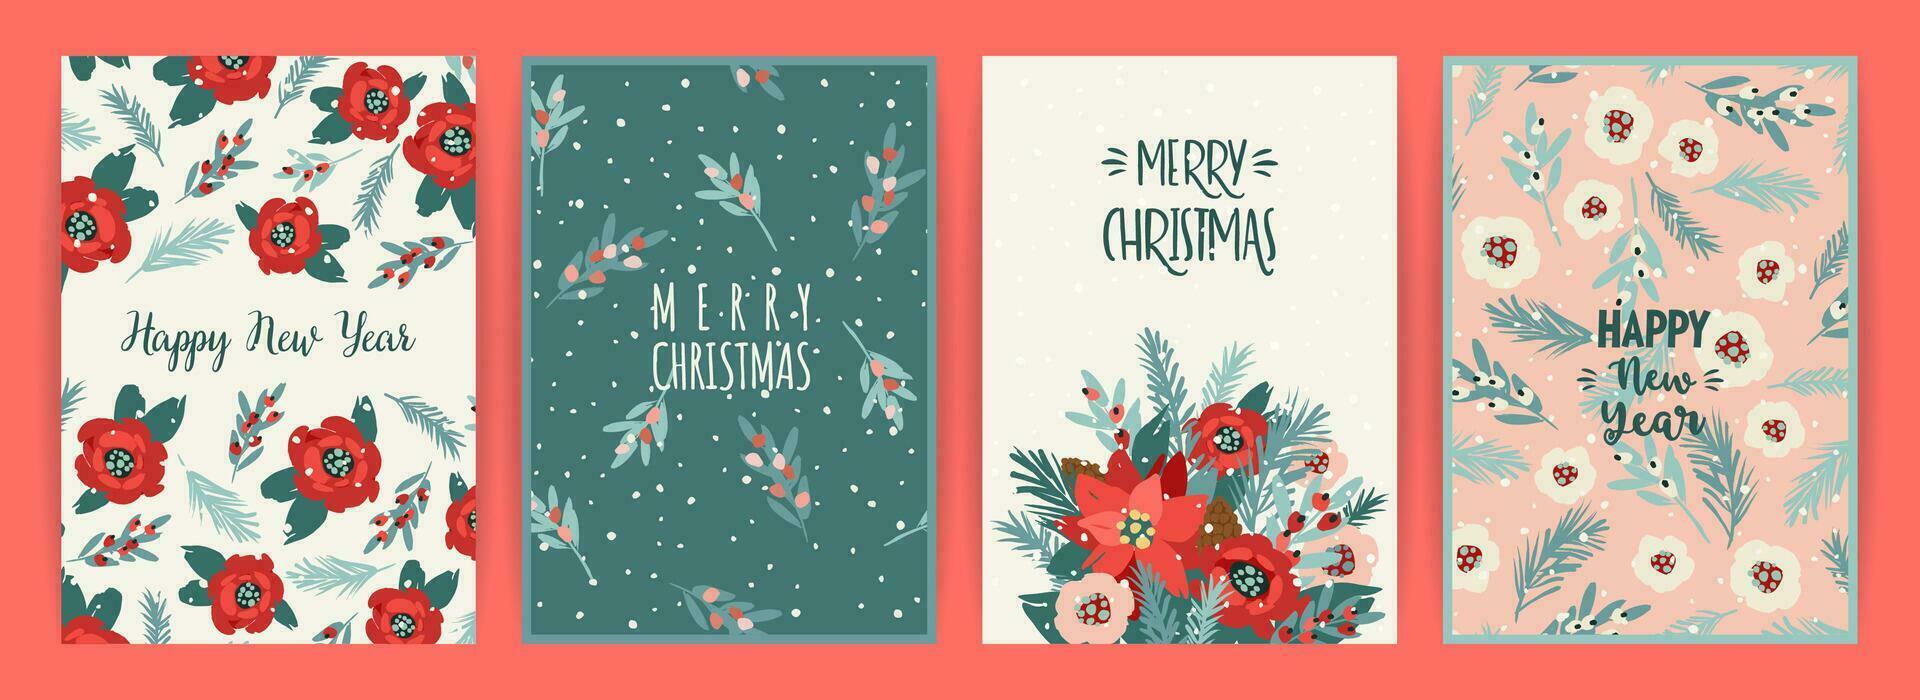 Weihnachten und glücklich Neu Jahr Karten mit Blumen, Weihnachten Baum, Geäst, Blätter, Beeren, Schneeflocken. modisch retro Stil. Vektor Design Vorlagen.